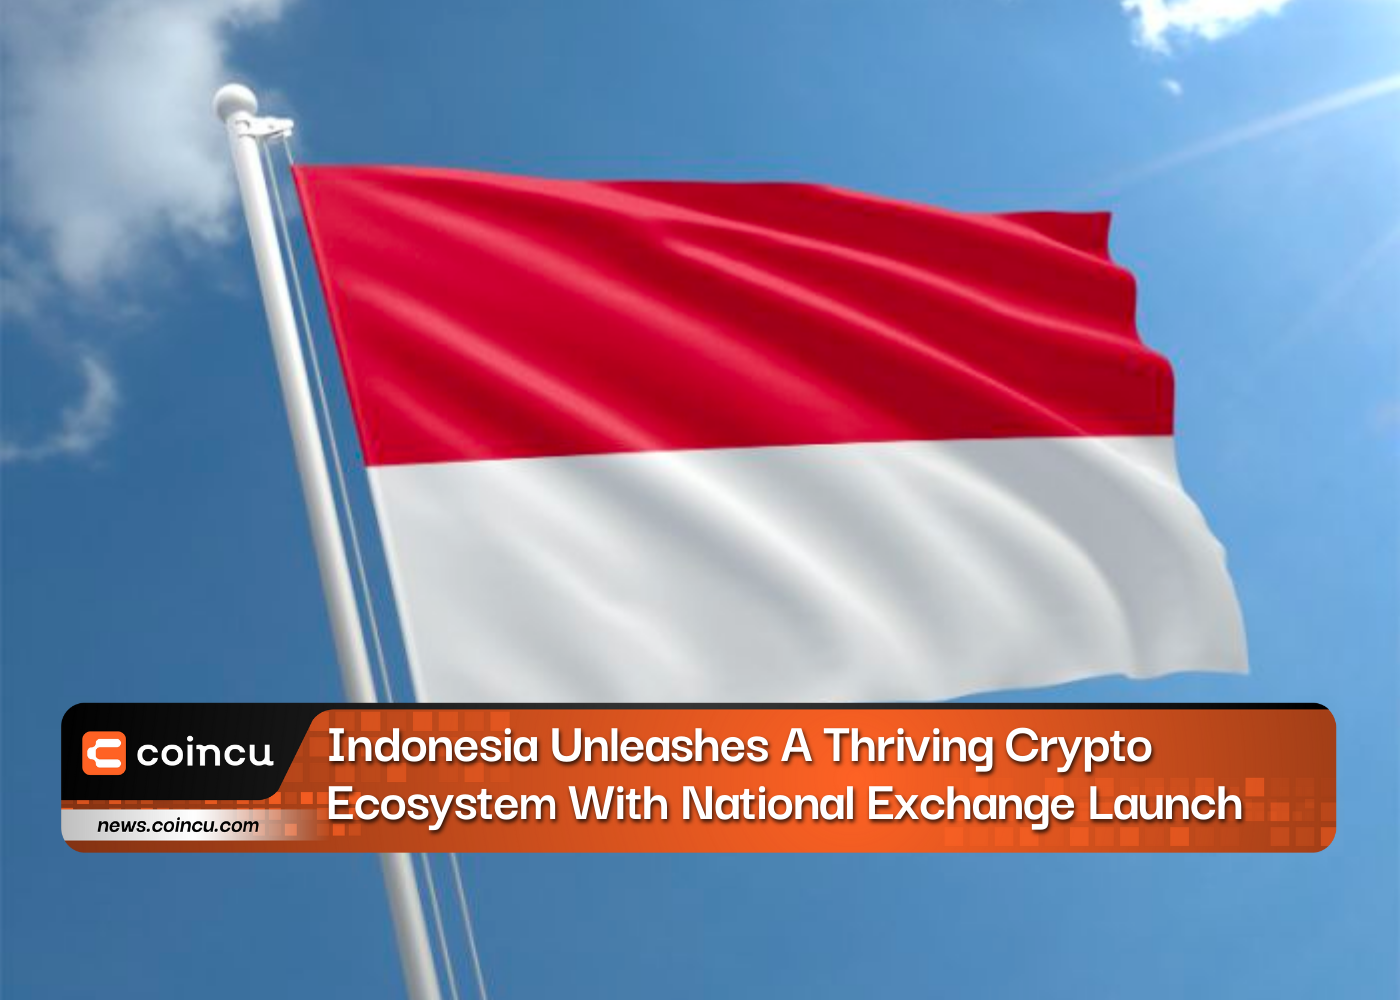 إندونيسيا تطلق العنان لنظام تشفير مزدهر مع إطلاق البورصة الوطنية